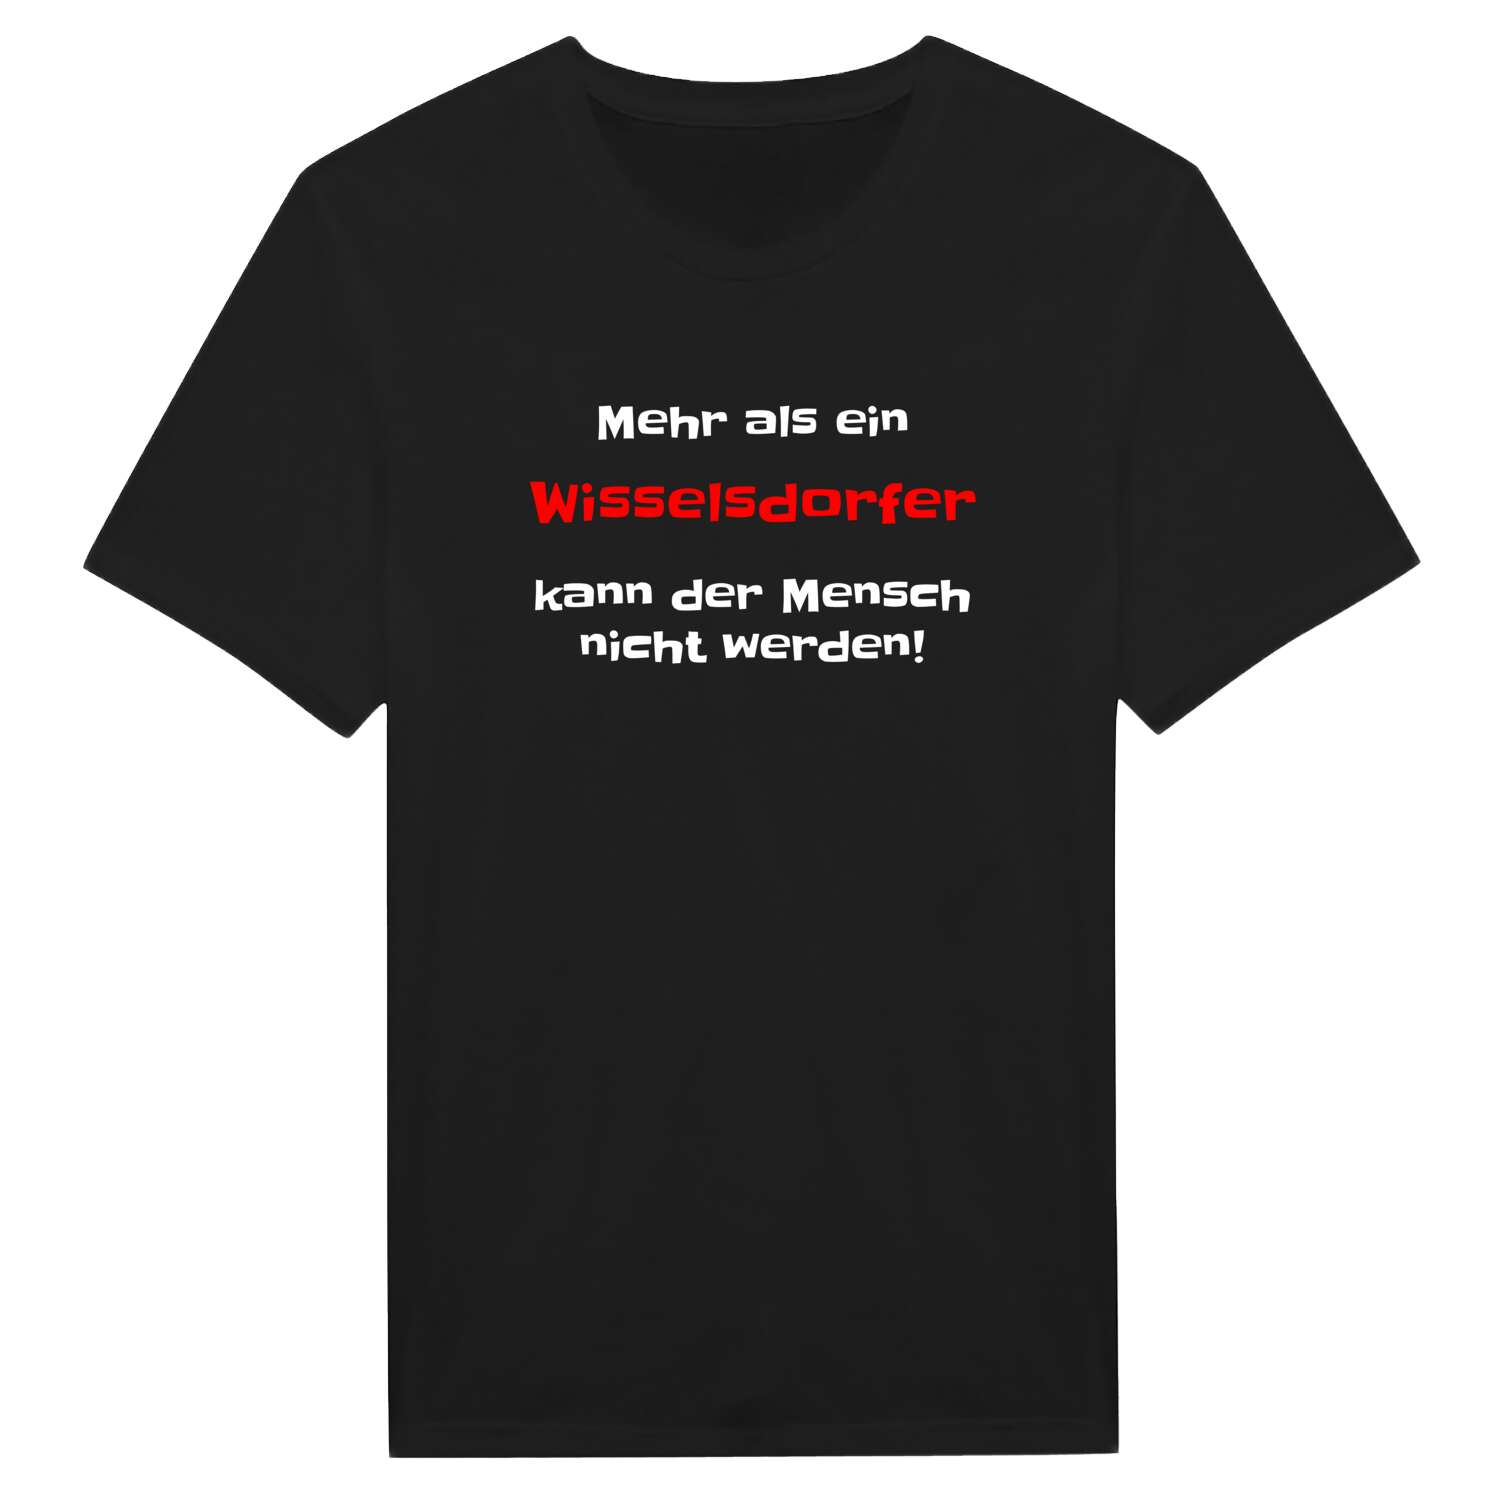 Wisselsdorf T-Shirt »Mehr als ein«